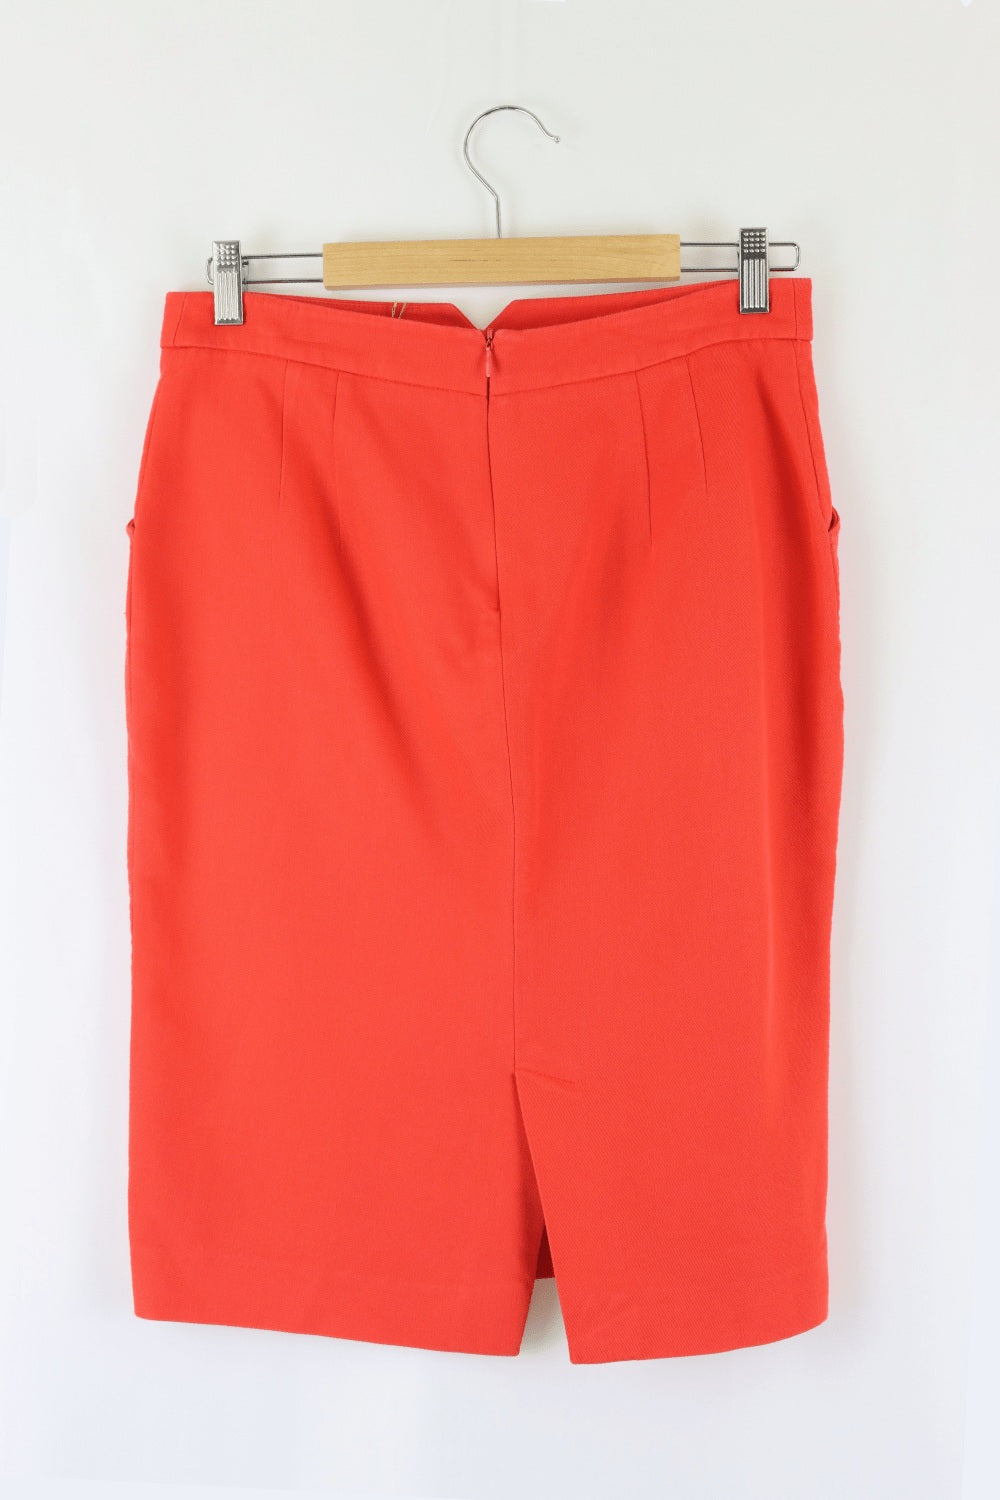 Zara Red Skirt L